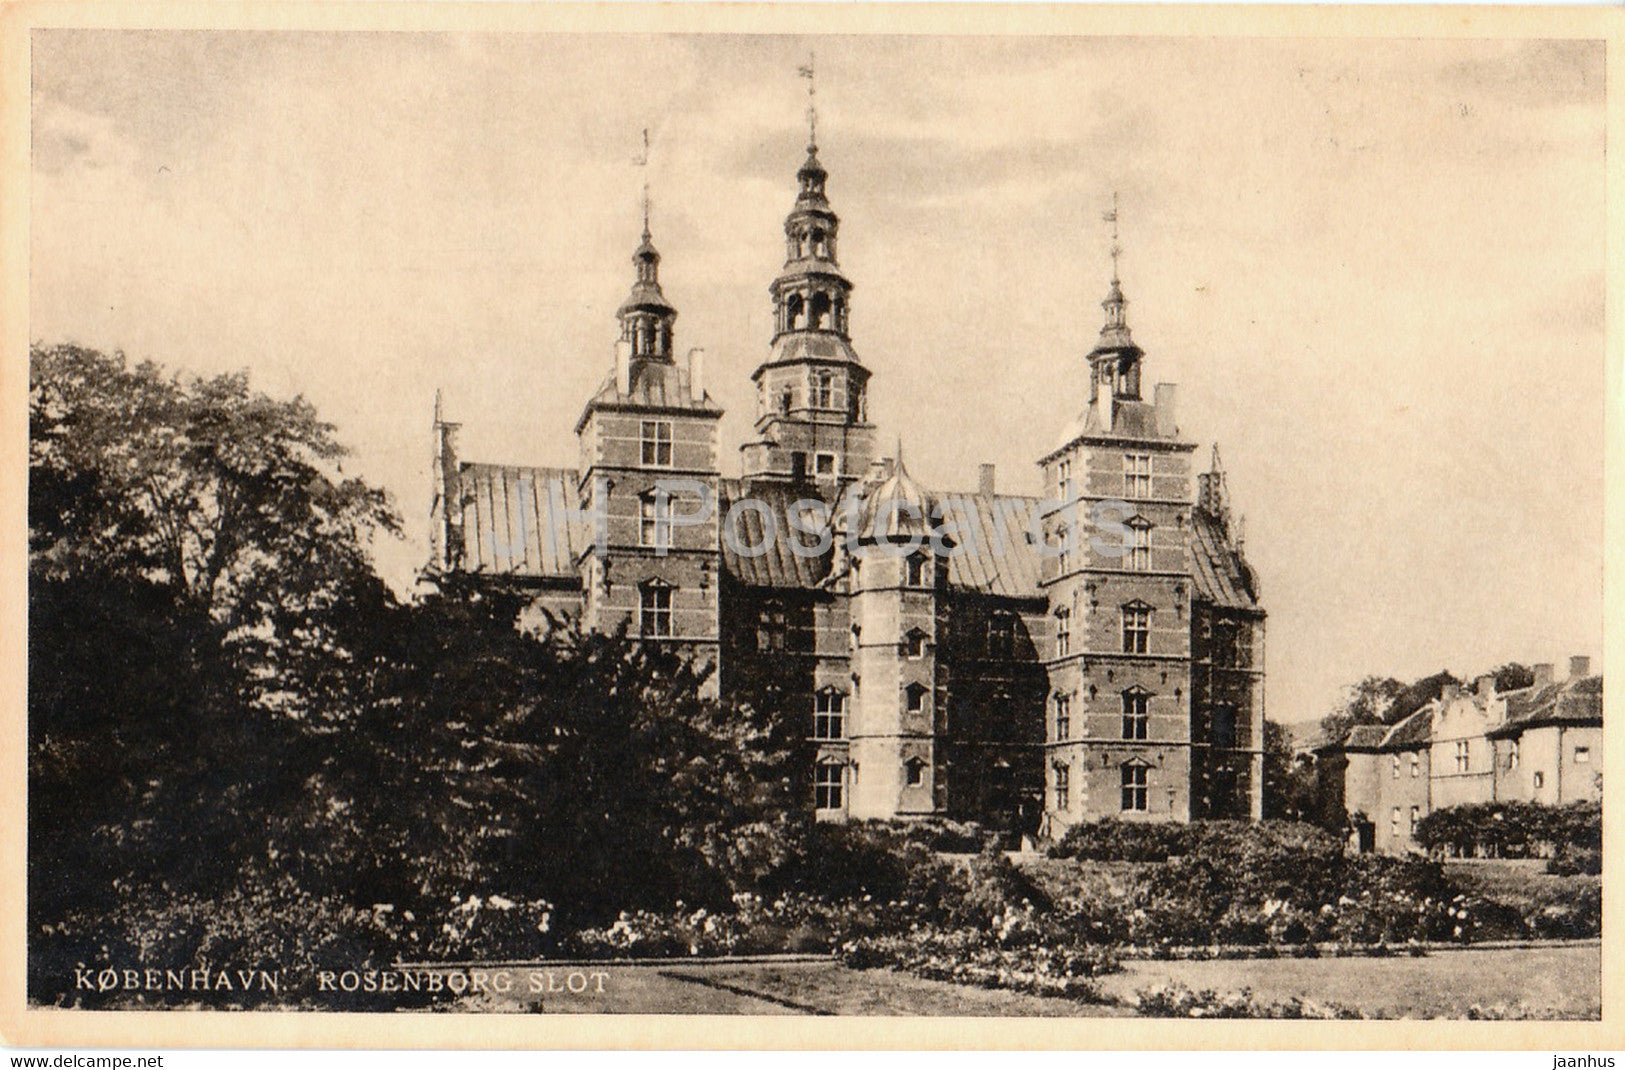 Copenhagen - Rosenborg Slot - castle - old postcard - 1948 - Denmark - used - JH Postcards